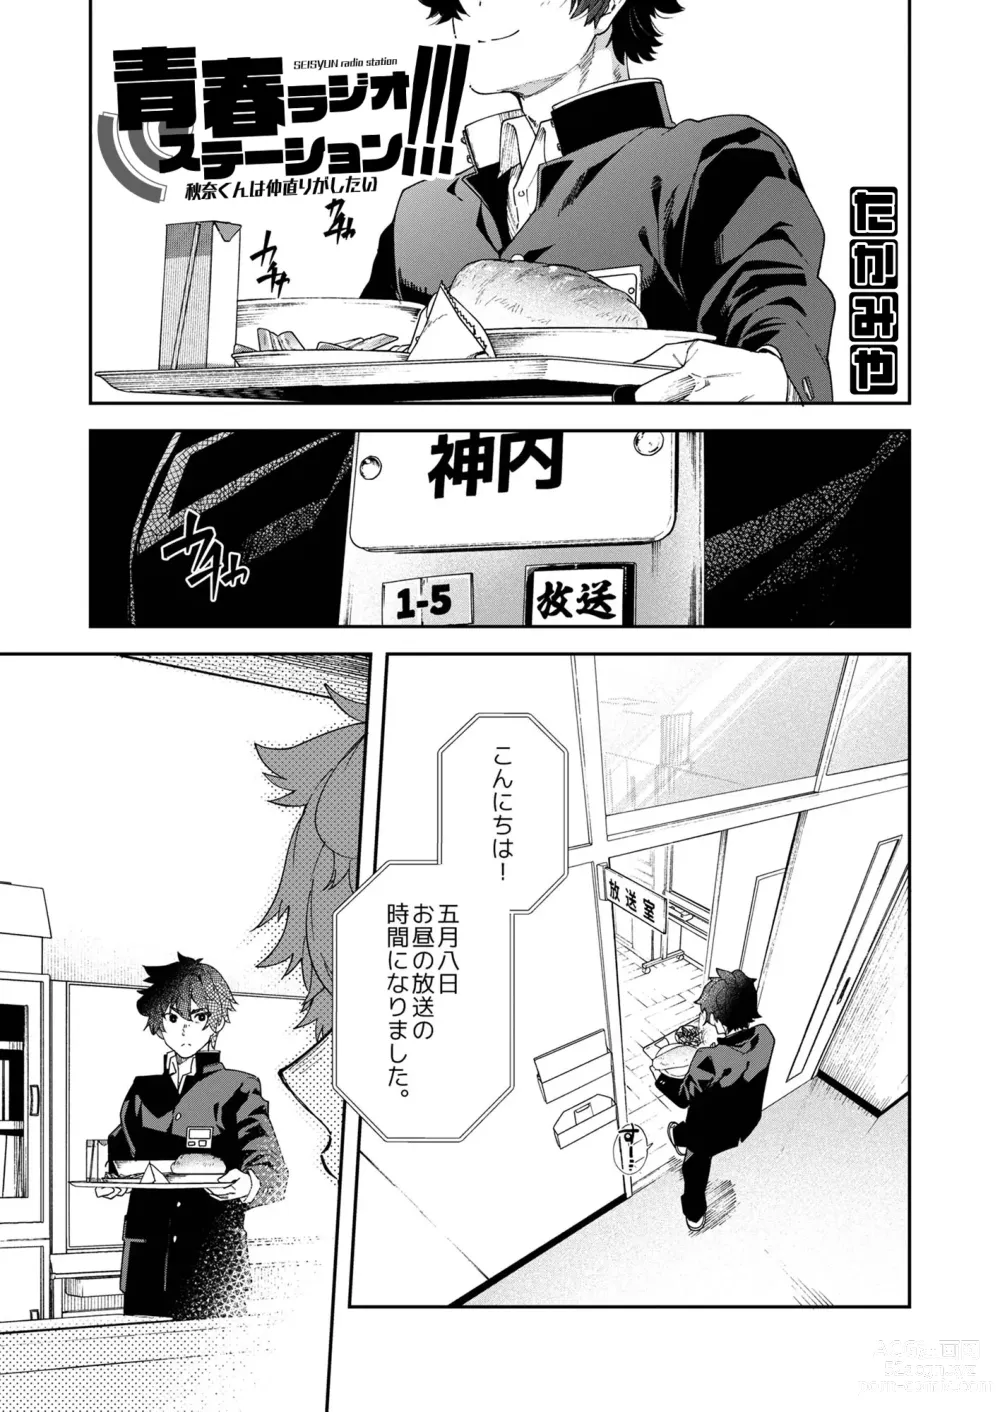 Page 7 of doujinshi Seishun Radio Station!!! Akina-kun wa Nakanaori ga Shitai